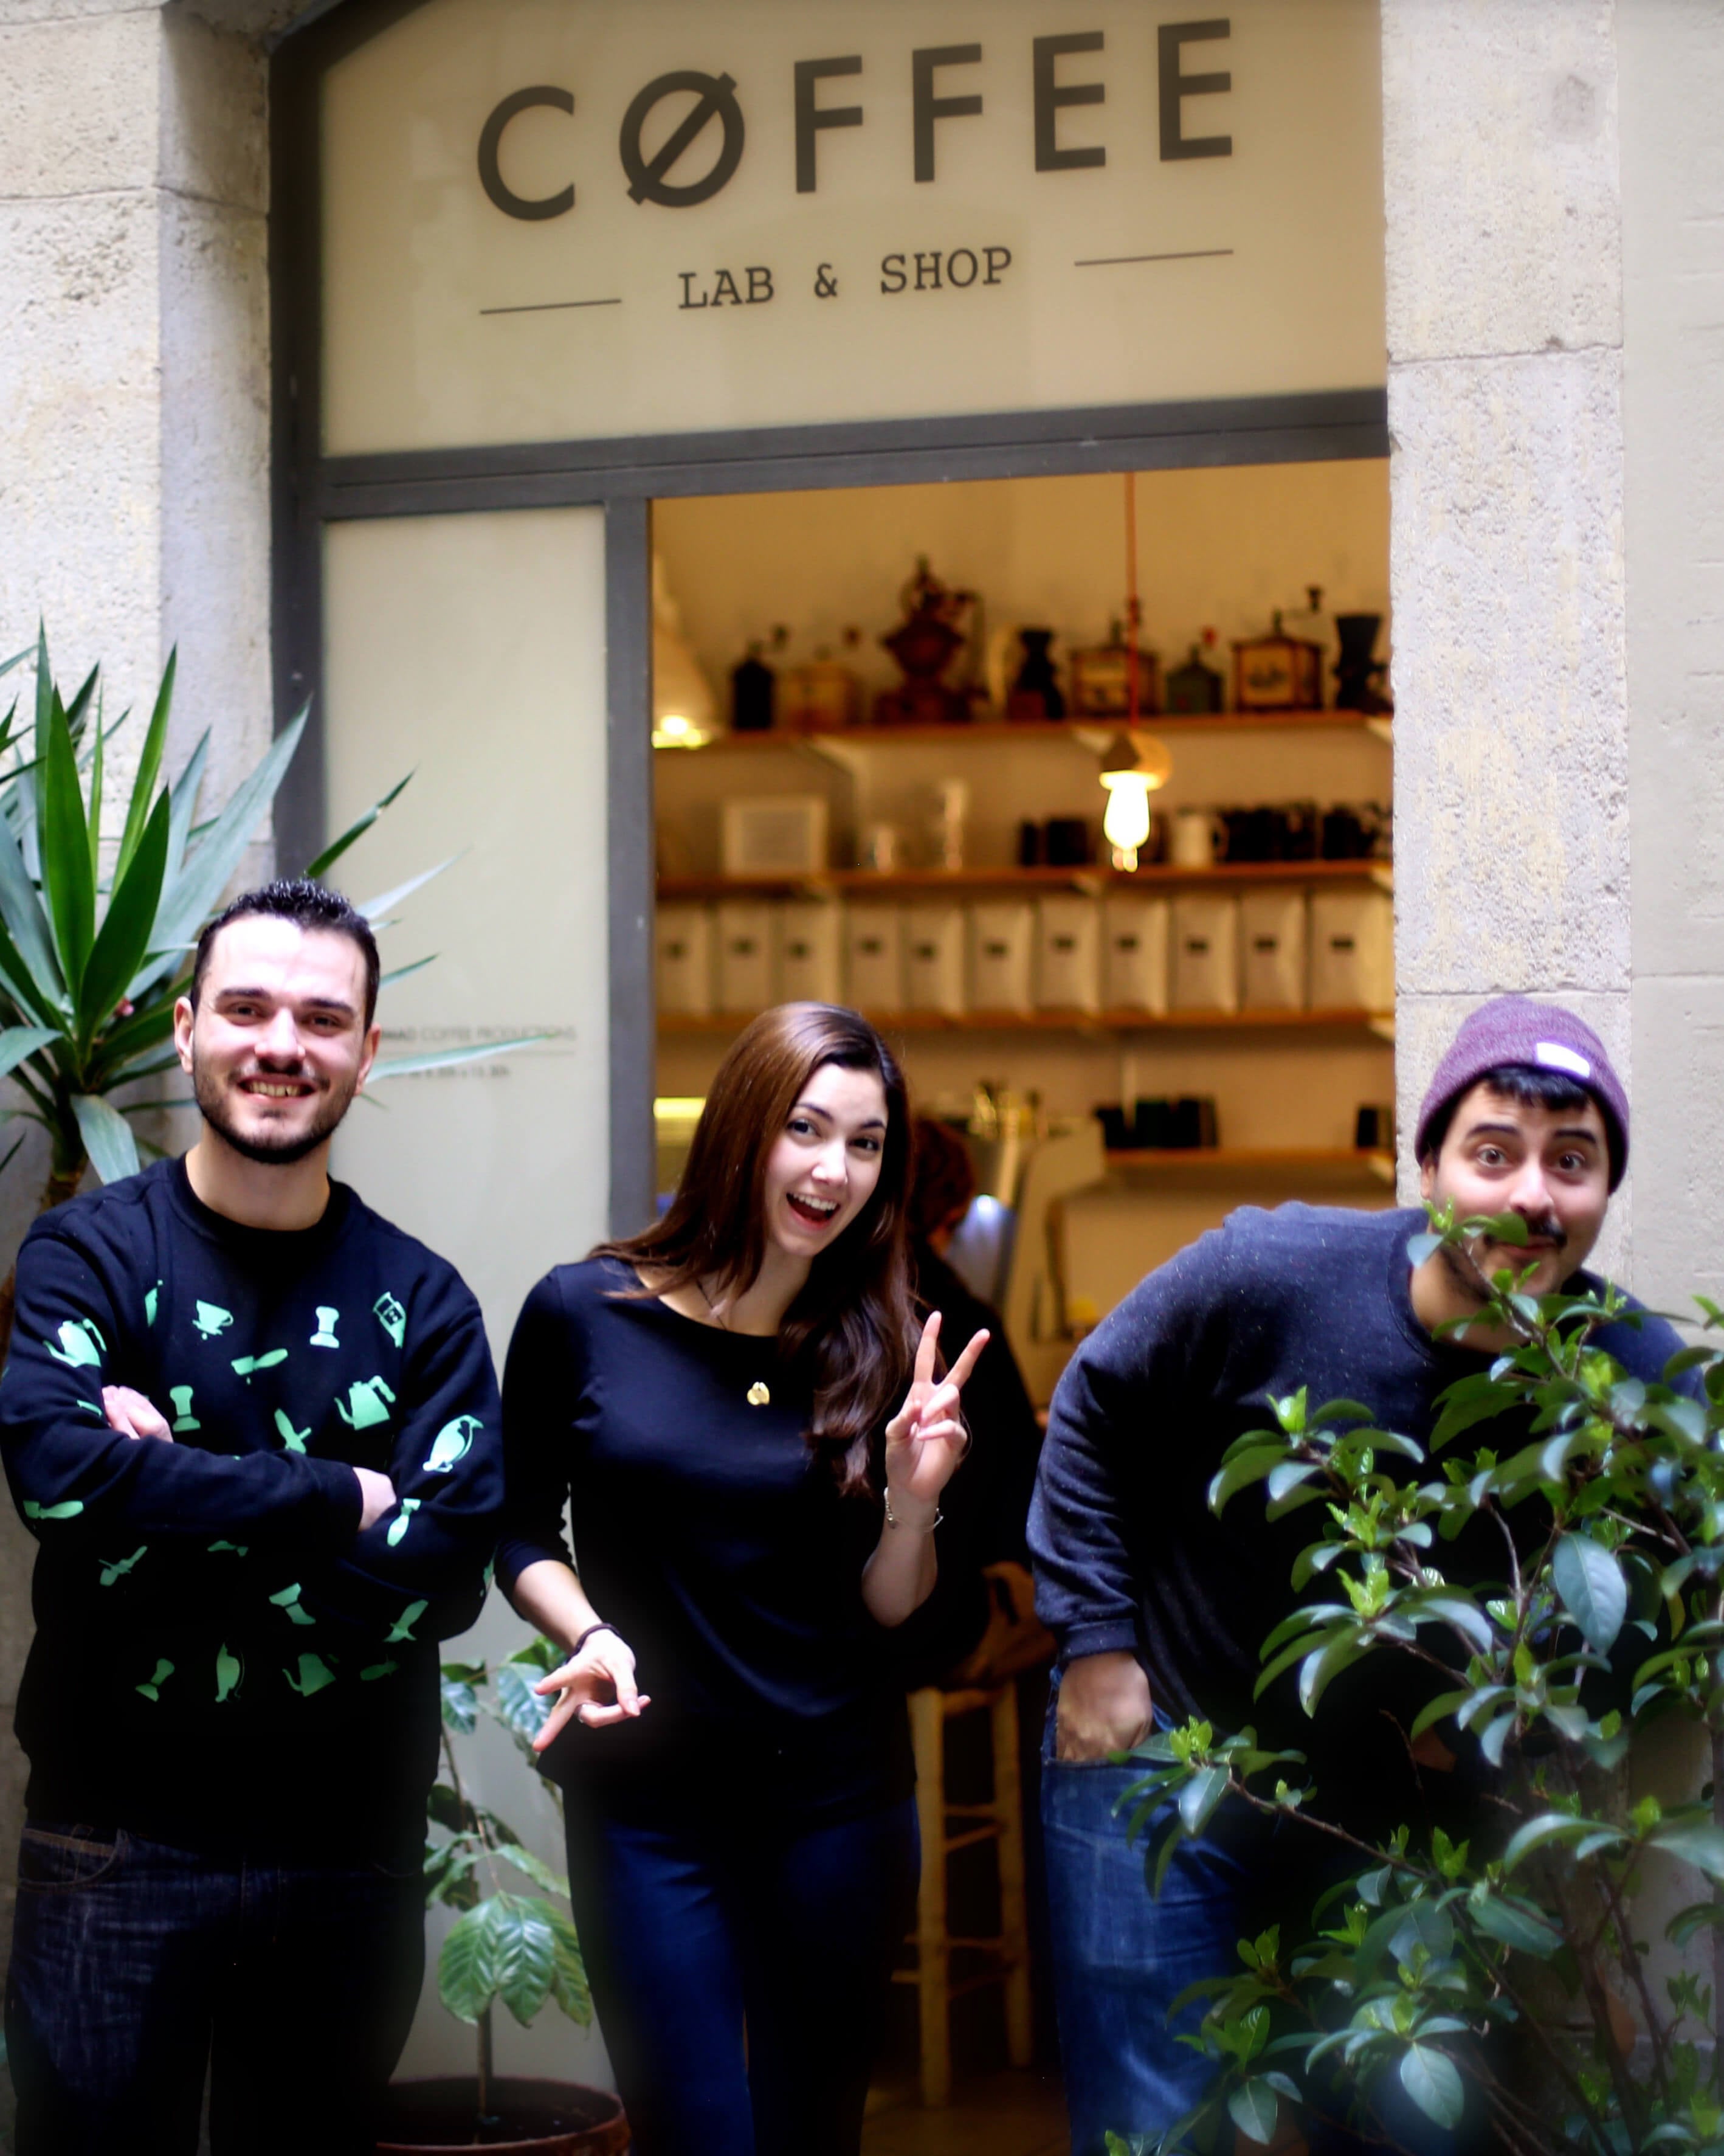 Davant del portal de Nomad Coffee Lab & Shop apareixen, d'esquerra a dreta: Fran Gonzalez, Monica Mc Coy i Jordi Mestre regant al costat d'unes plantes.